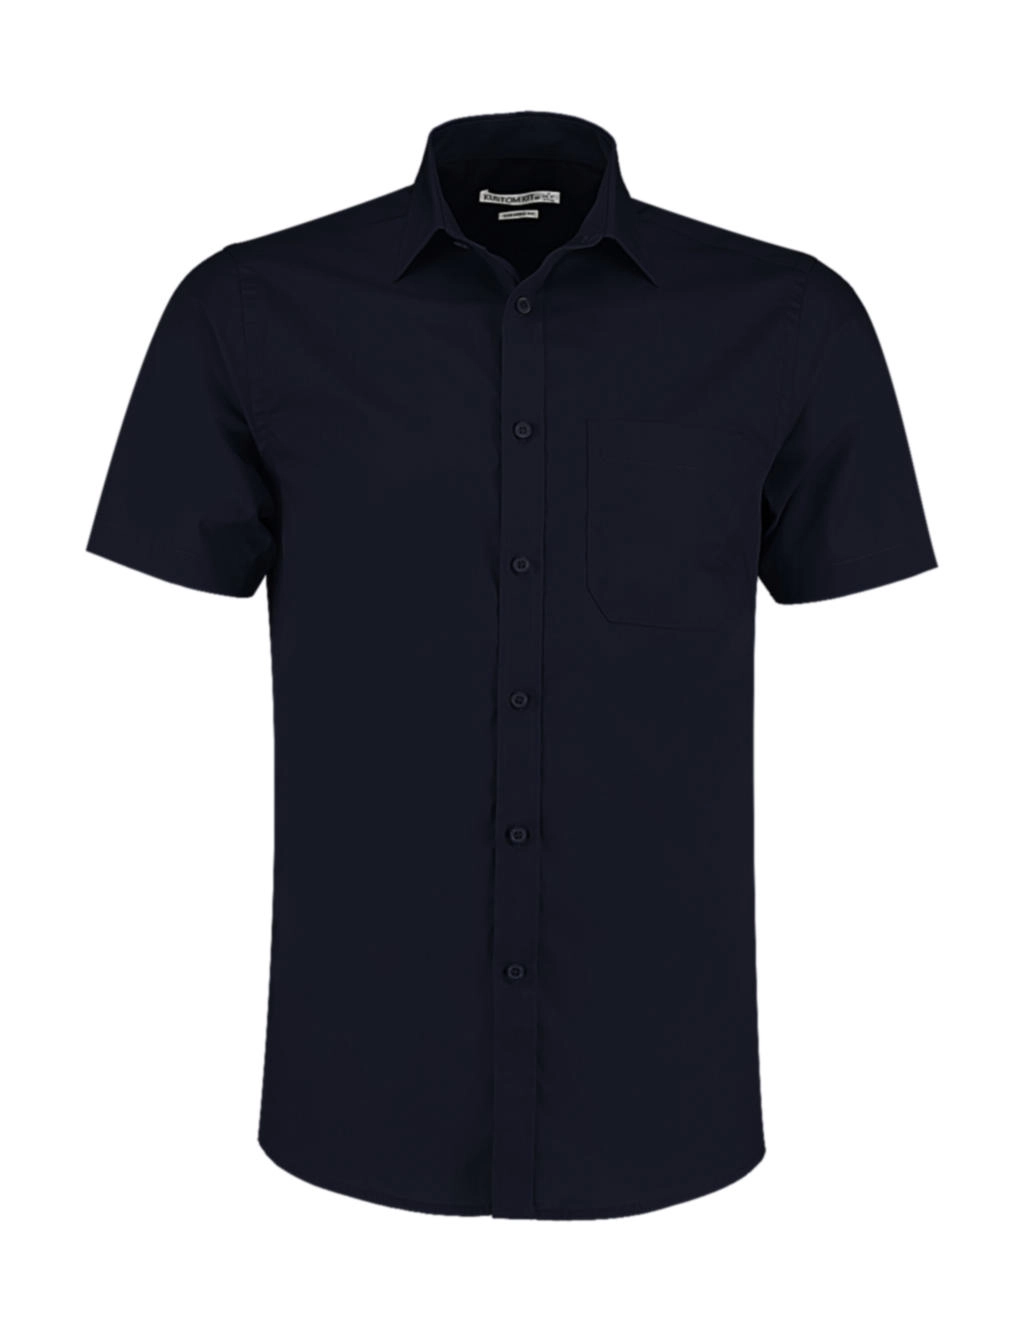 Tailored Fit Poplin Shirt SSL zum Besticken und Bedrucken in der Farbe Dark Navy mit Ihren Logo, Schriftzug oder Motiv.